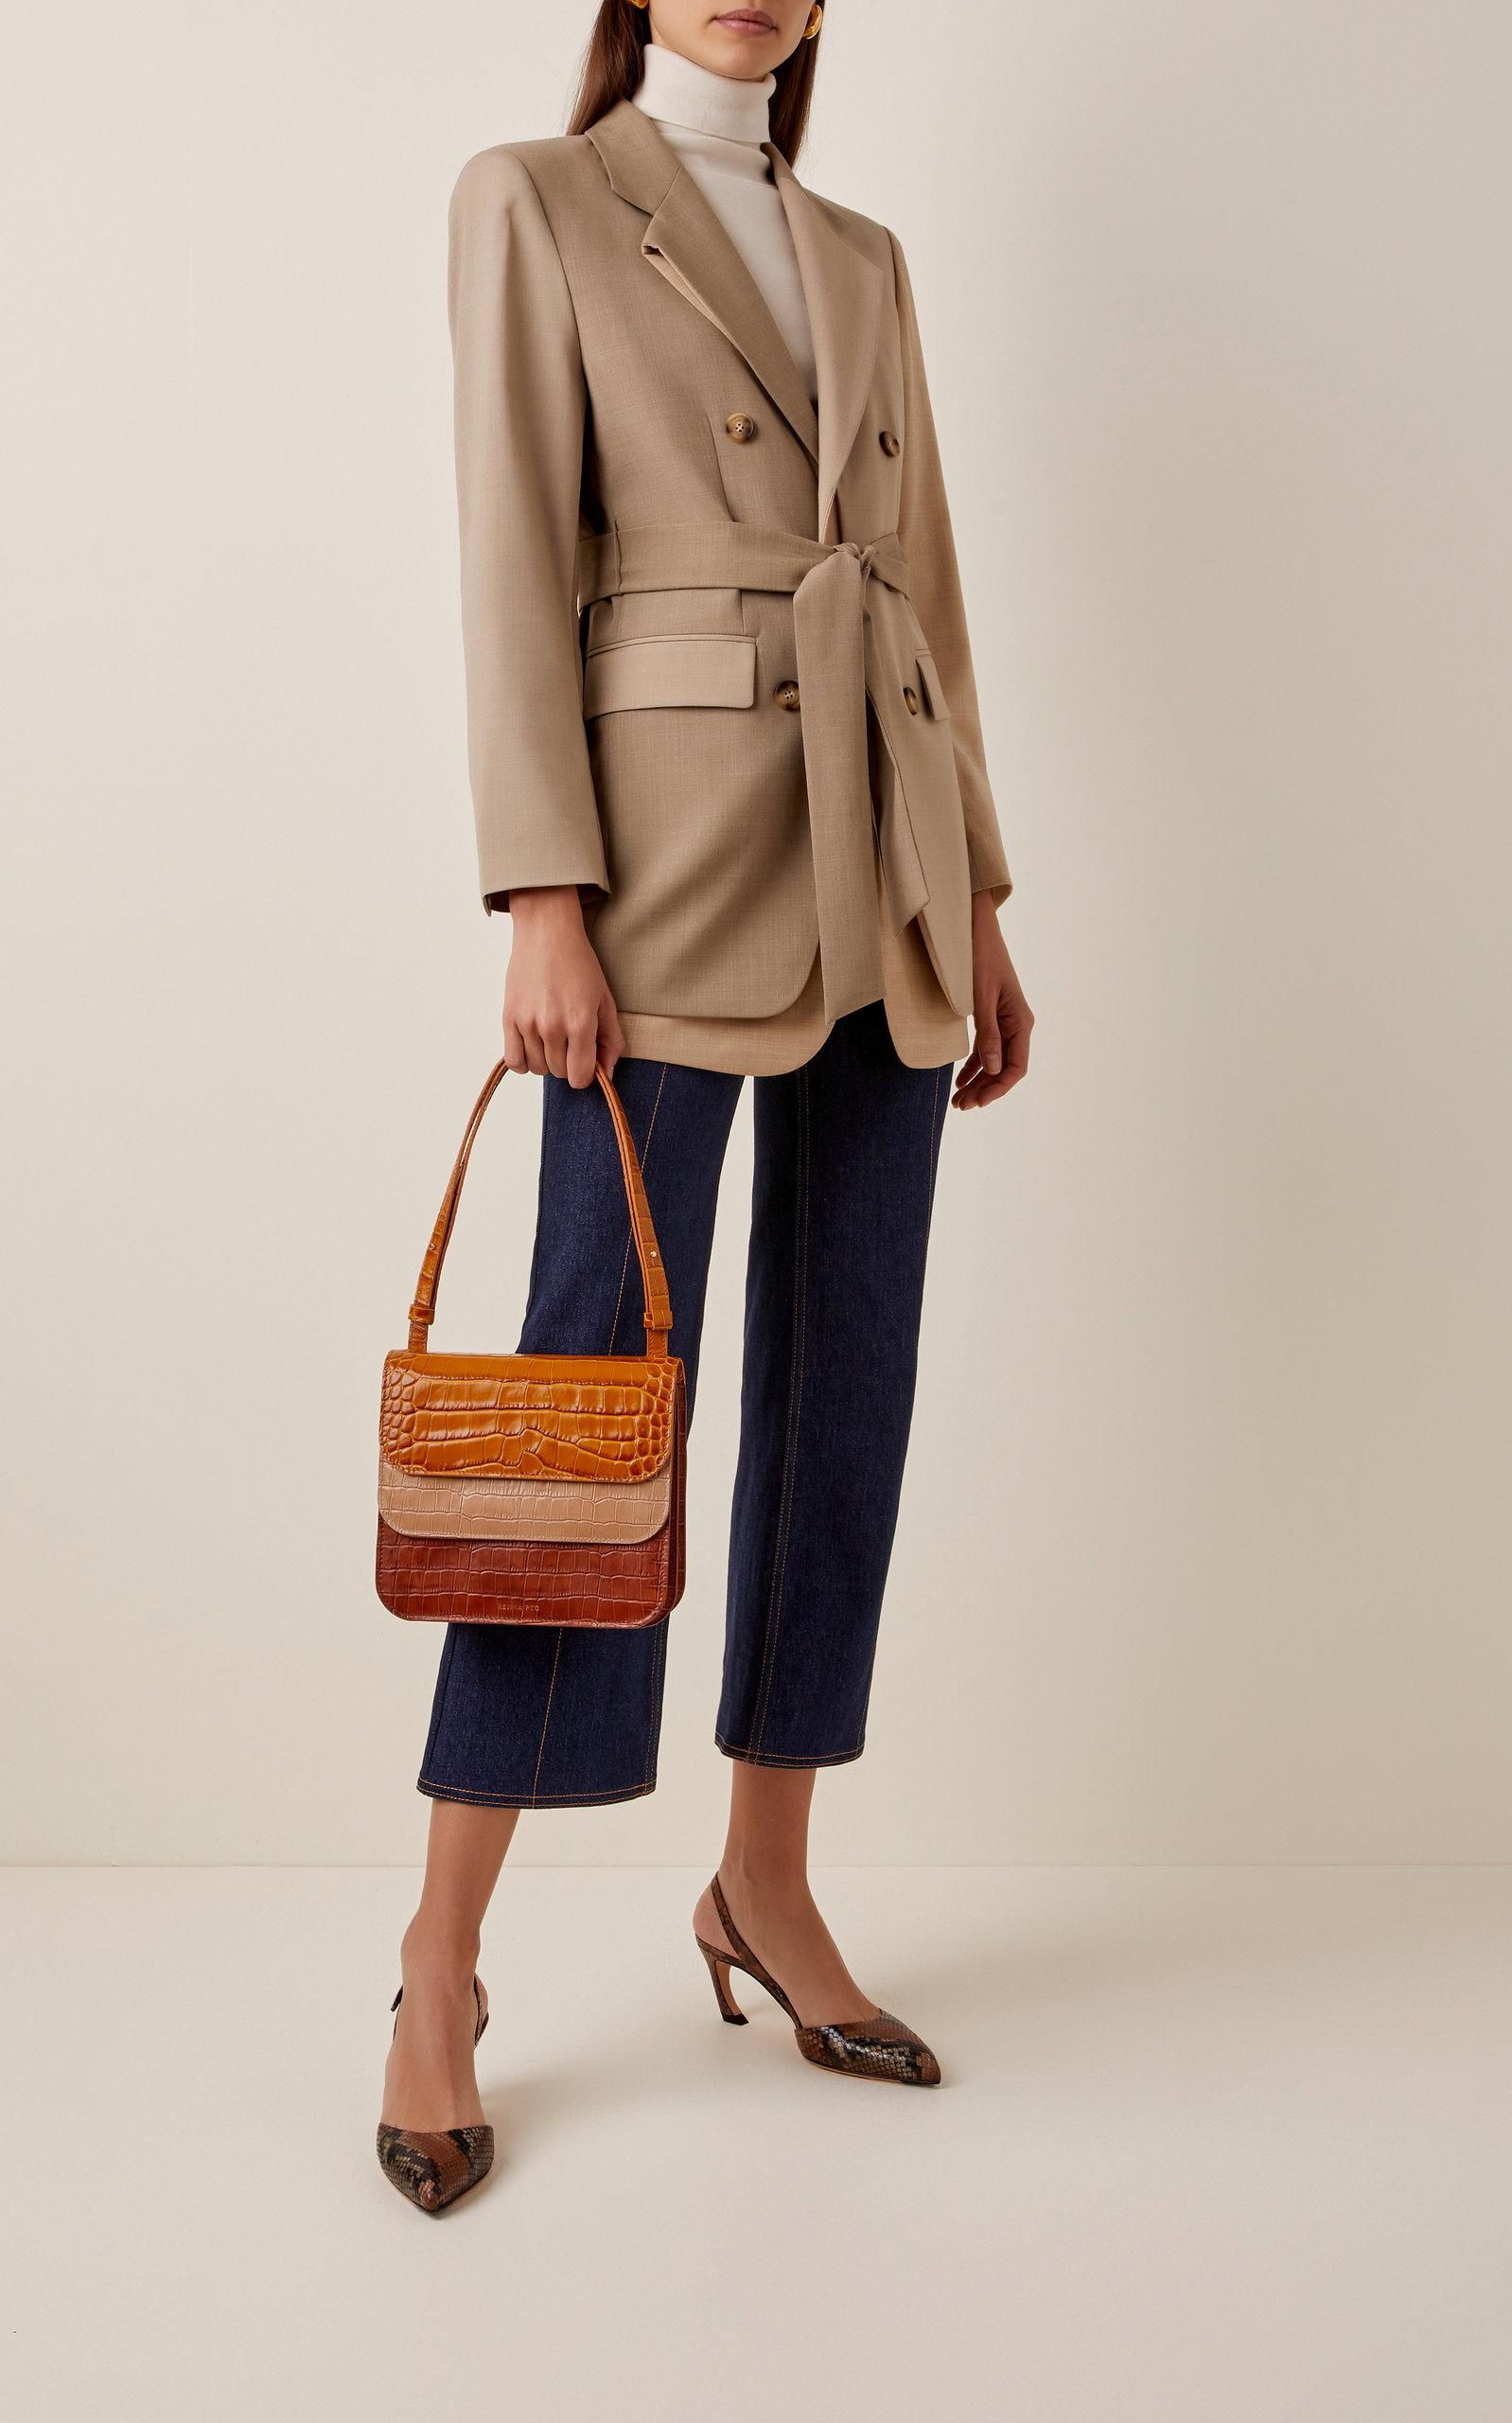 Rejina Pyo Ana Color-block Croc-effect Leather Shoulder Bag in 